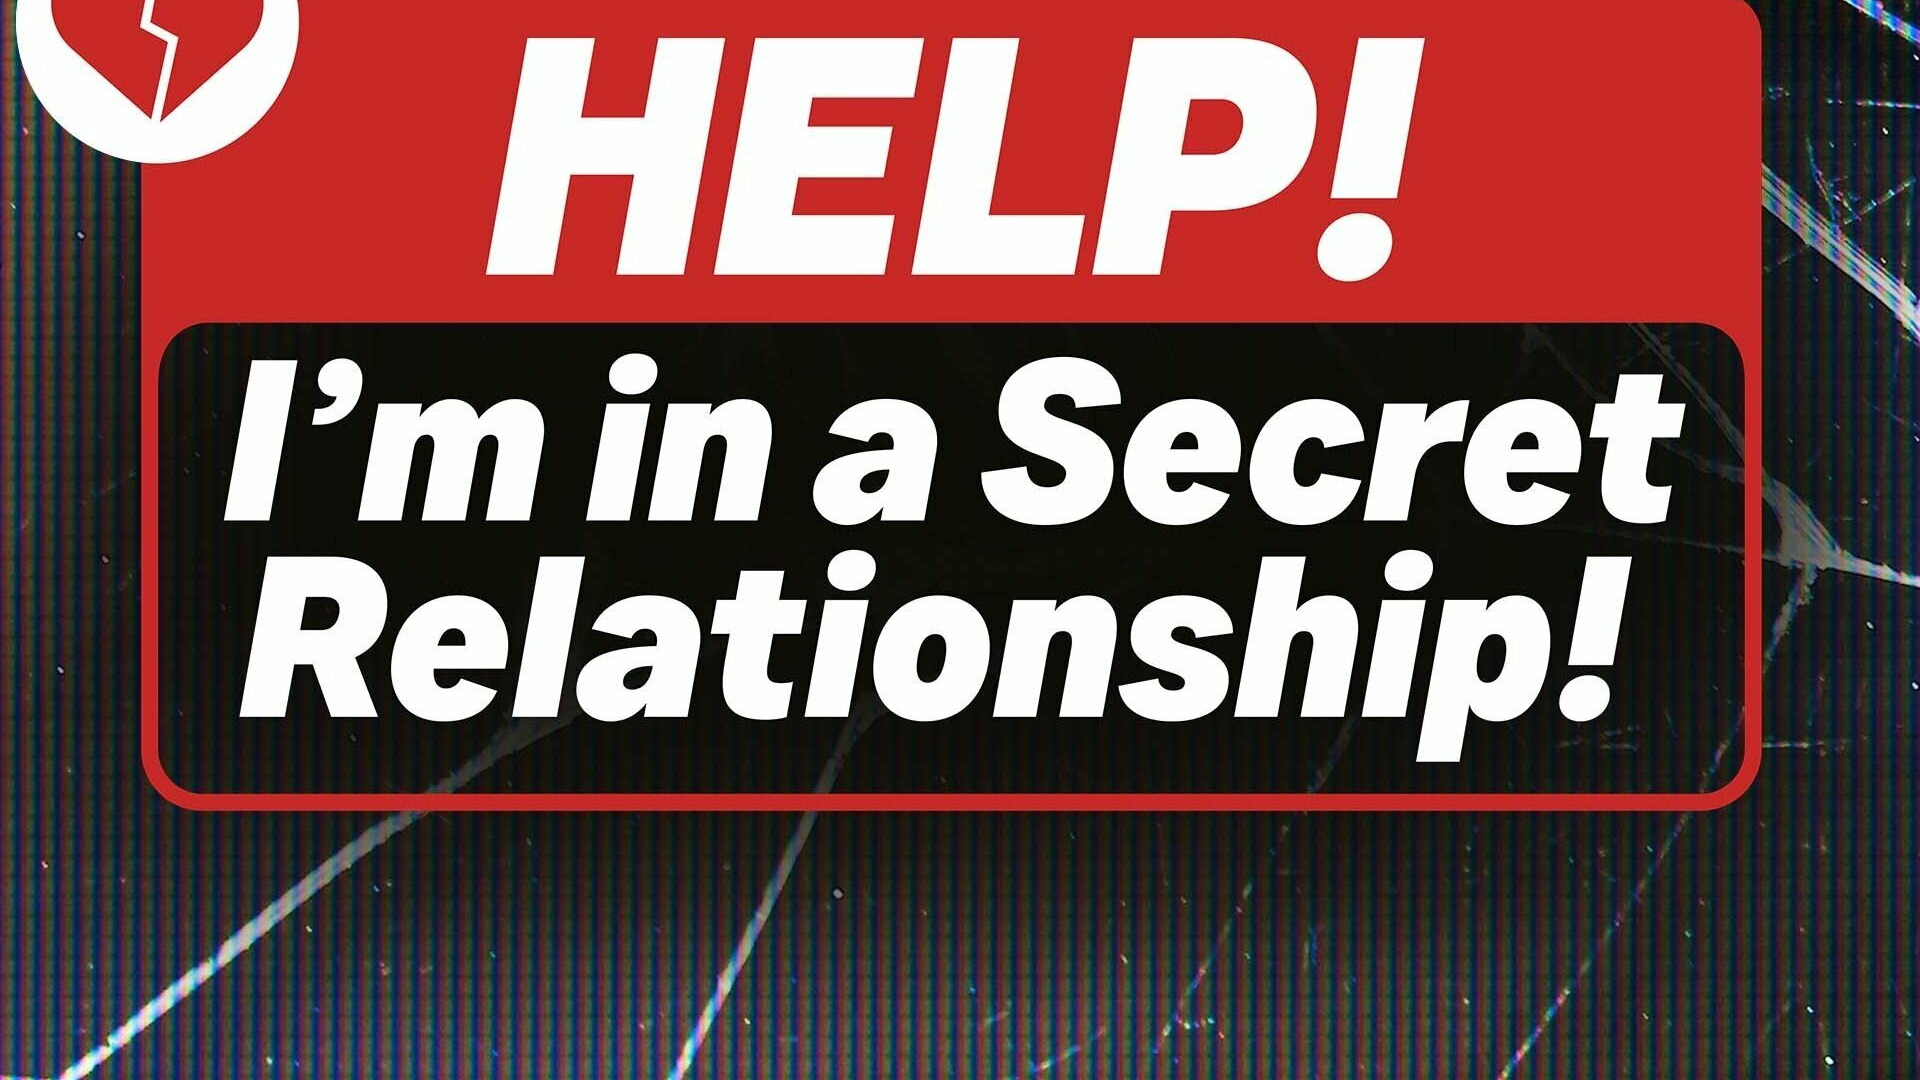 Сериал Help! I'm in a Secret Relationship!